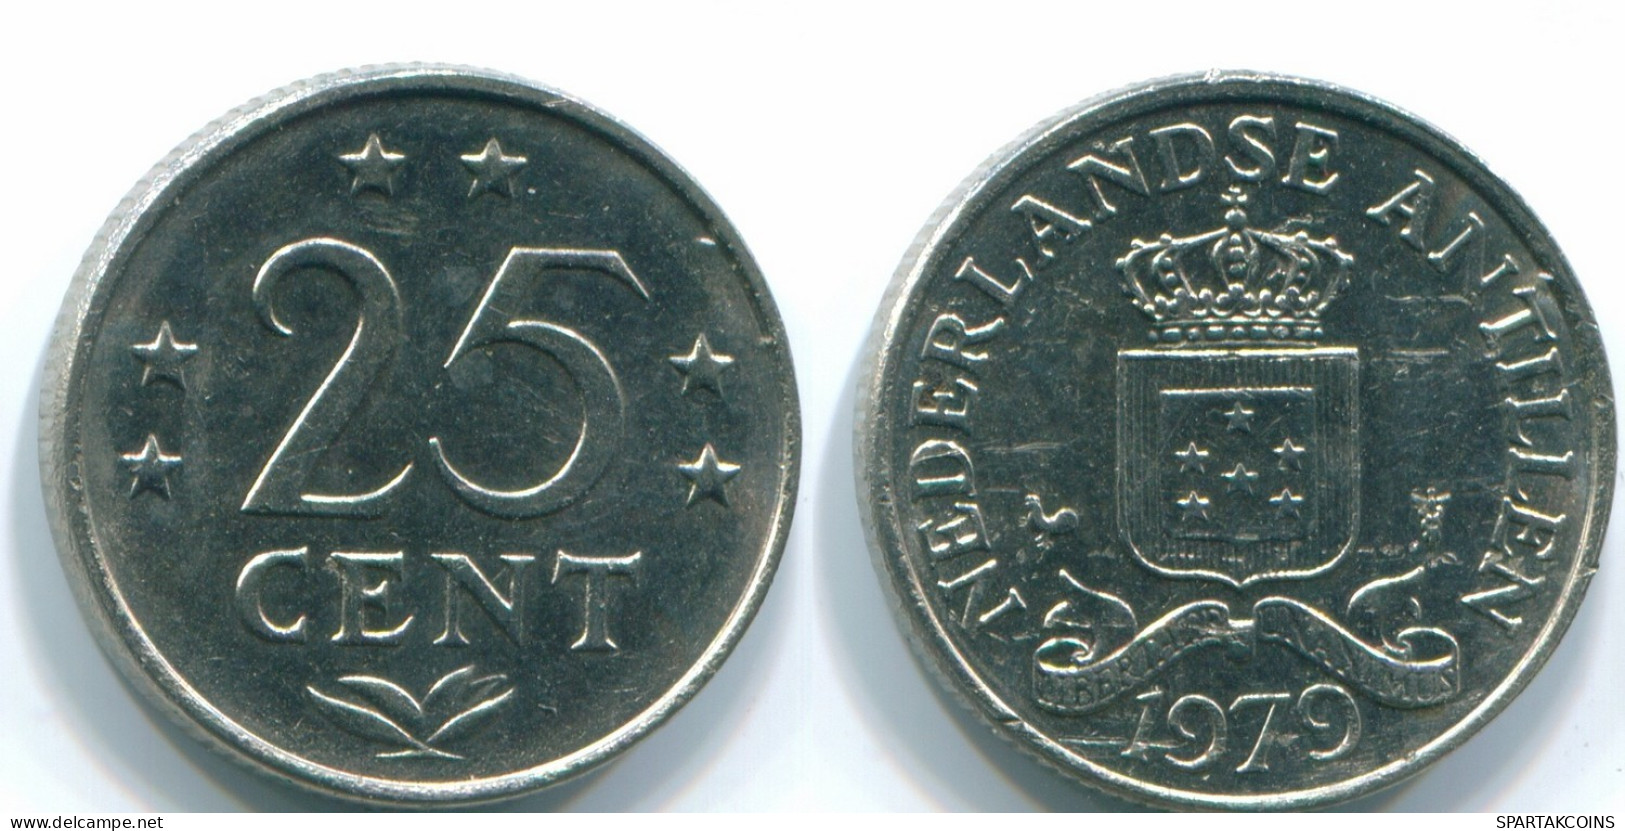 25 CENTS 1979 NIEDERLÄNDISCHE ANTILLEN Nickel Koloniale Münze #S11647.D.A - Antillas Neerlandesas